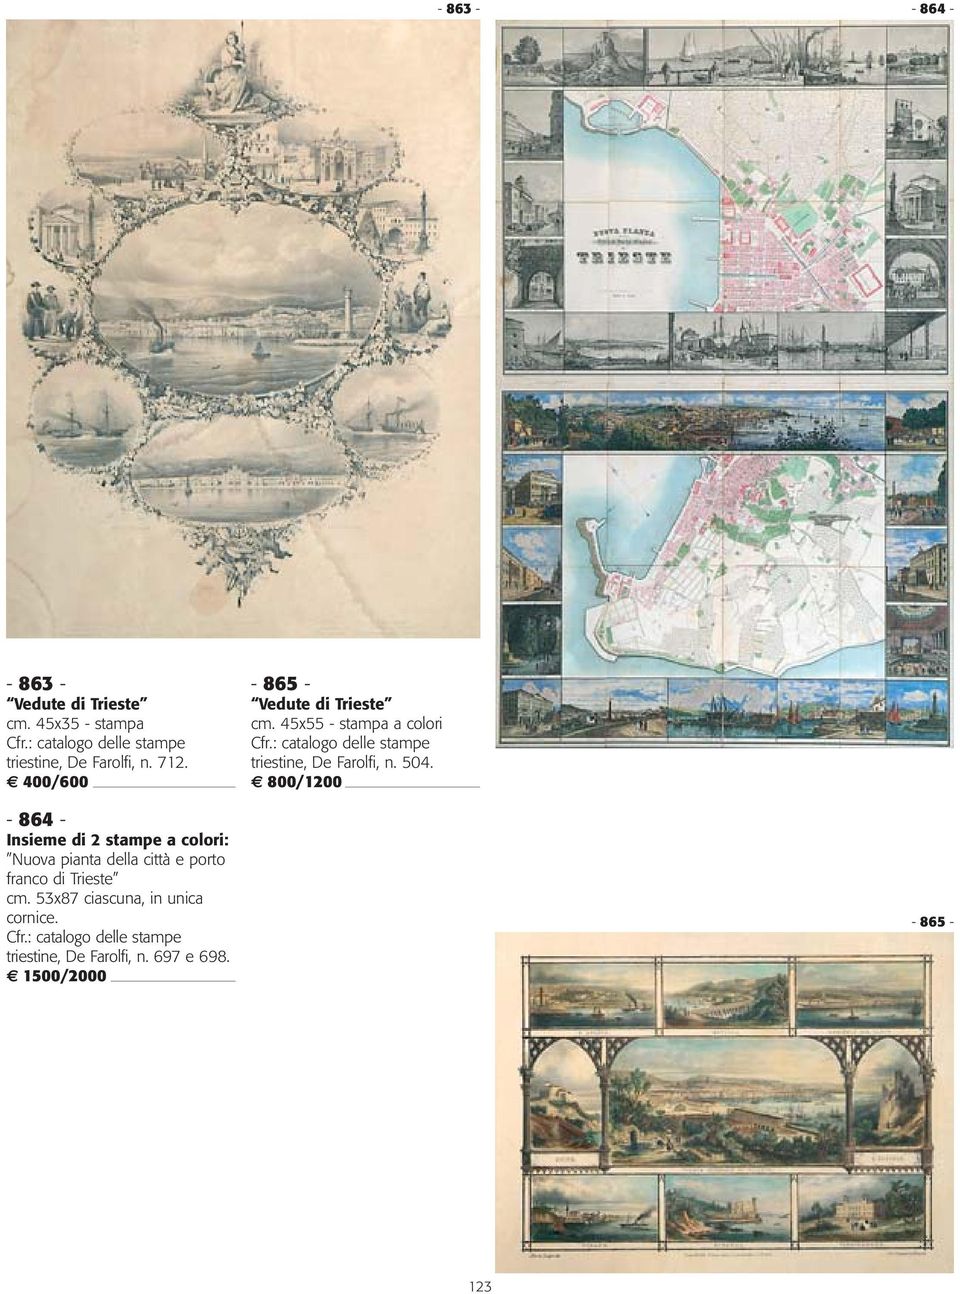 800/1200-864 - Insieme di 2 stampe a colori: Nuova pianta della città e porto franco di